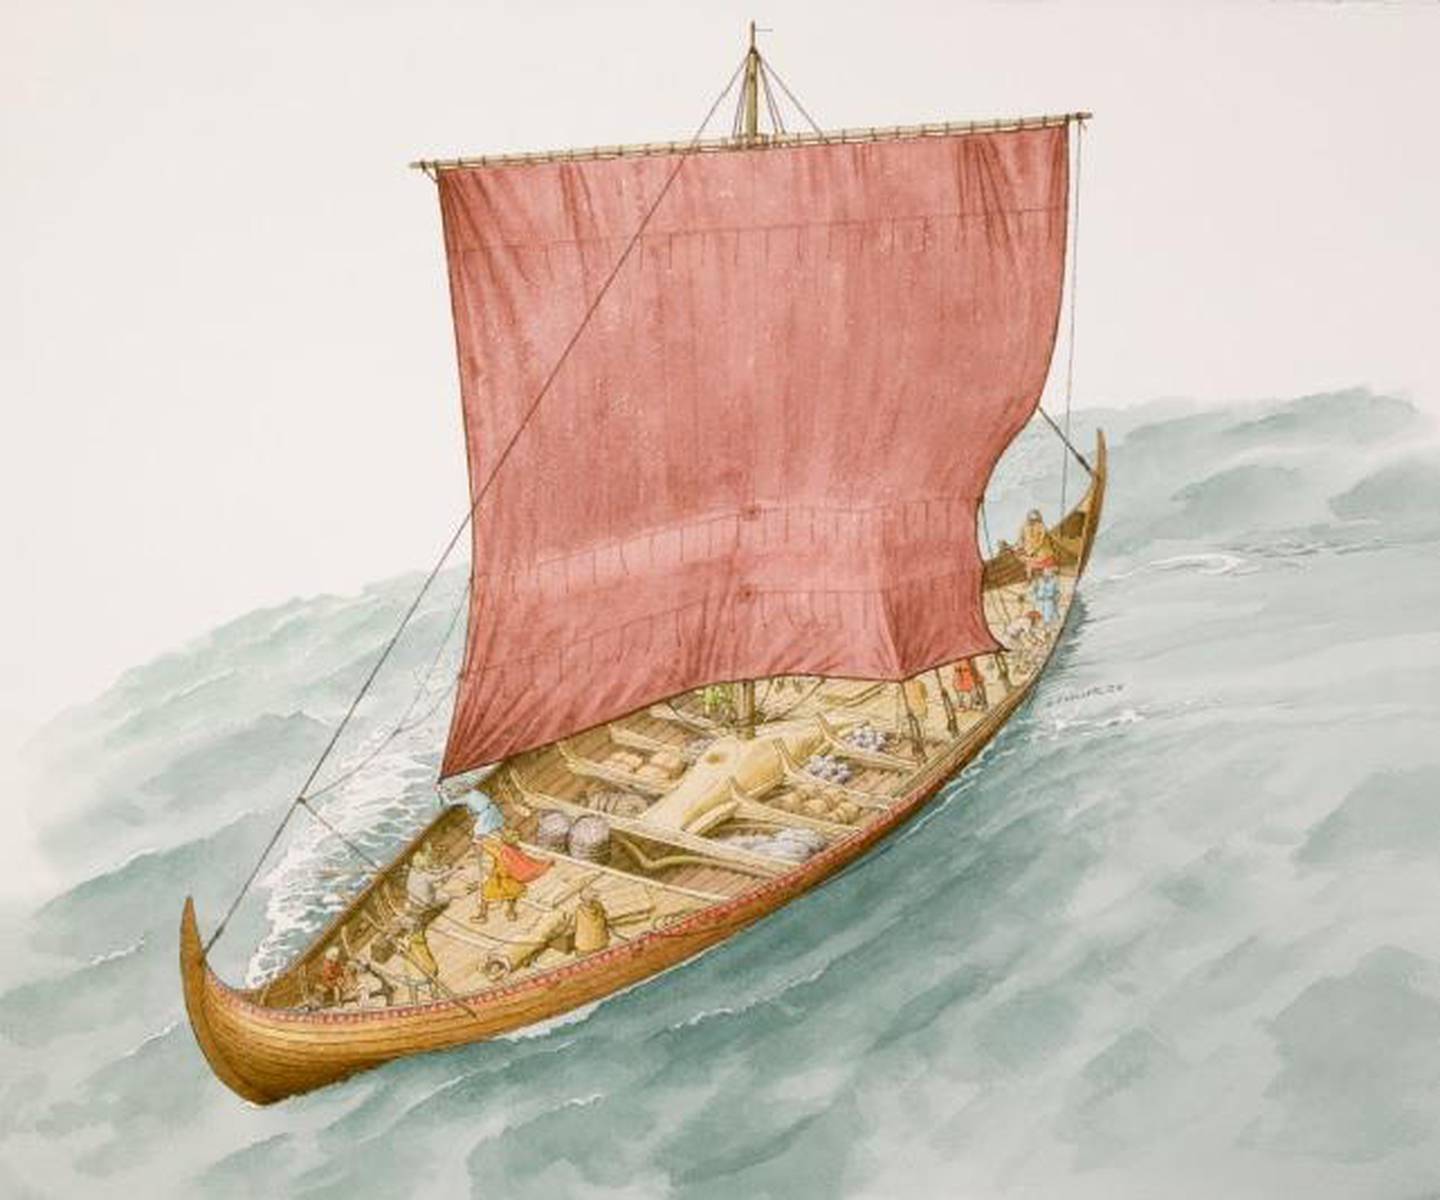 Knut Paasche fikk laget denne akvarellen som en illustrasjon på hvordan Tuneskipet kan ha sett ut i høy sjø og med seilet hevet.